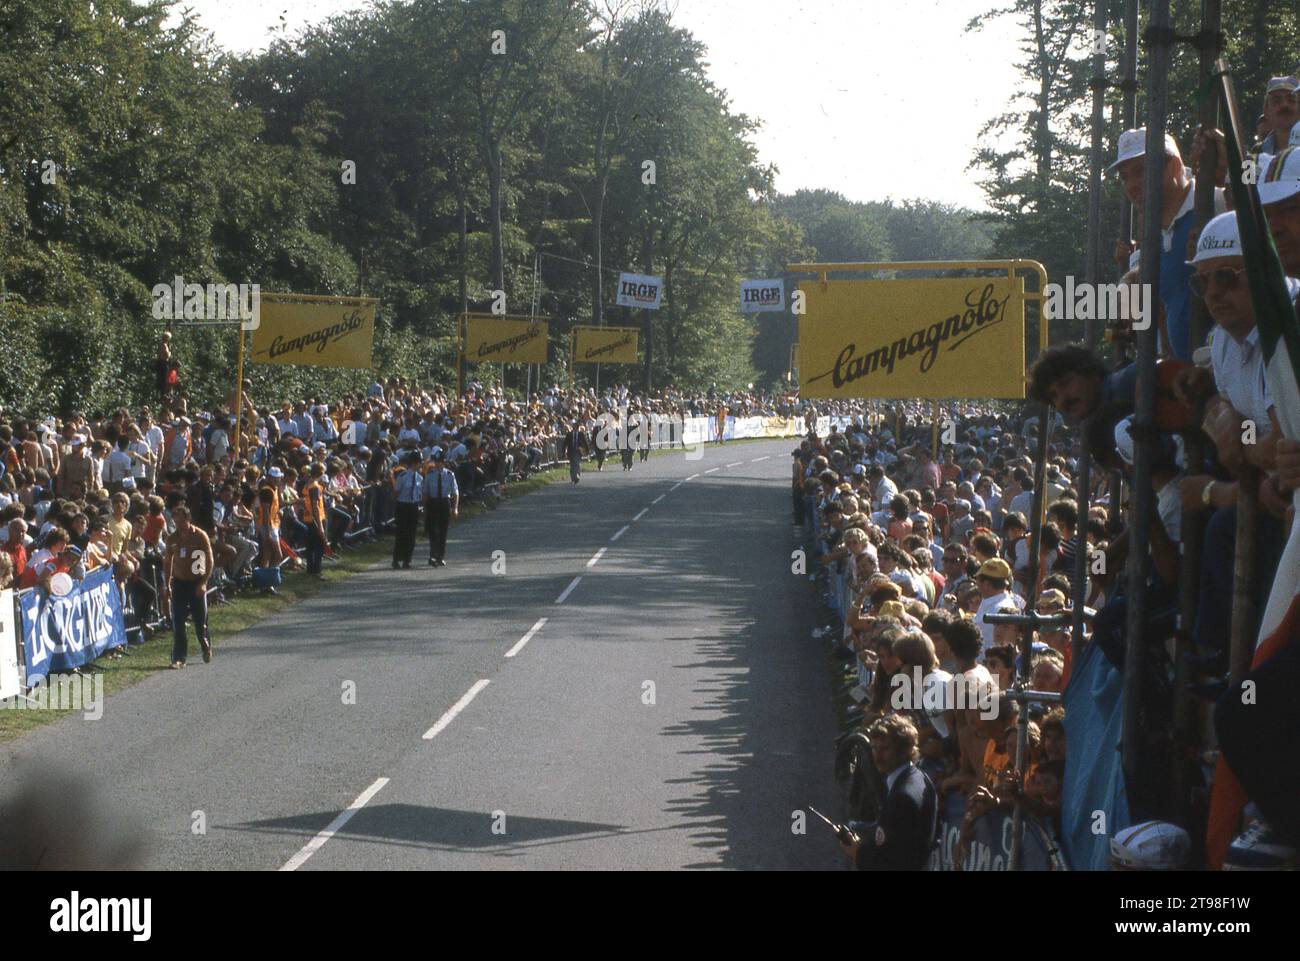 1982 reichten die Zuschauer bei der UCI-Weltmeisterschaft auf der berühmten Goodwood-Rennstrecke in Chichester, West Sussex, England, Großbritannien. Das spannende Rennen gewann der Italiener Giuseppe Sarroni, der Radfahrlegenden besiegte, Greg LeMond und Sean Kelly mit seinem letzten Sprint um den Sieg und gab ihm die Spitzmane von „La fulcilata di Goodwood“, dem Schuss von Goodwood. Mandy Jones aus Großbritannien gewann das Rennen der Frauen. Stockfoto